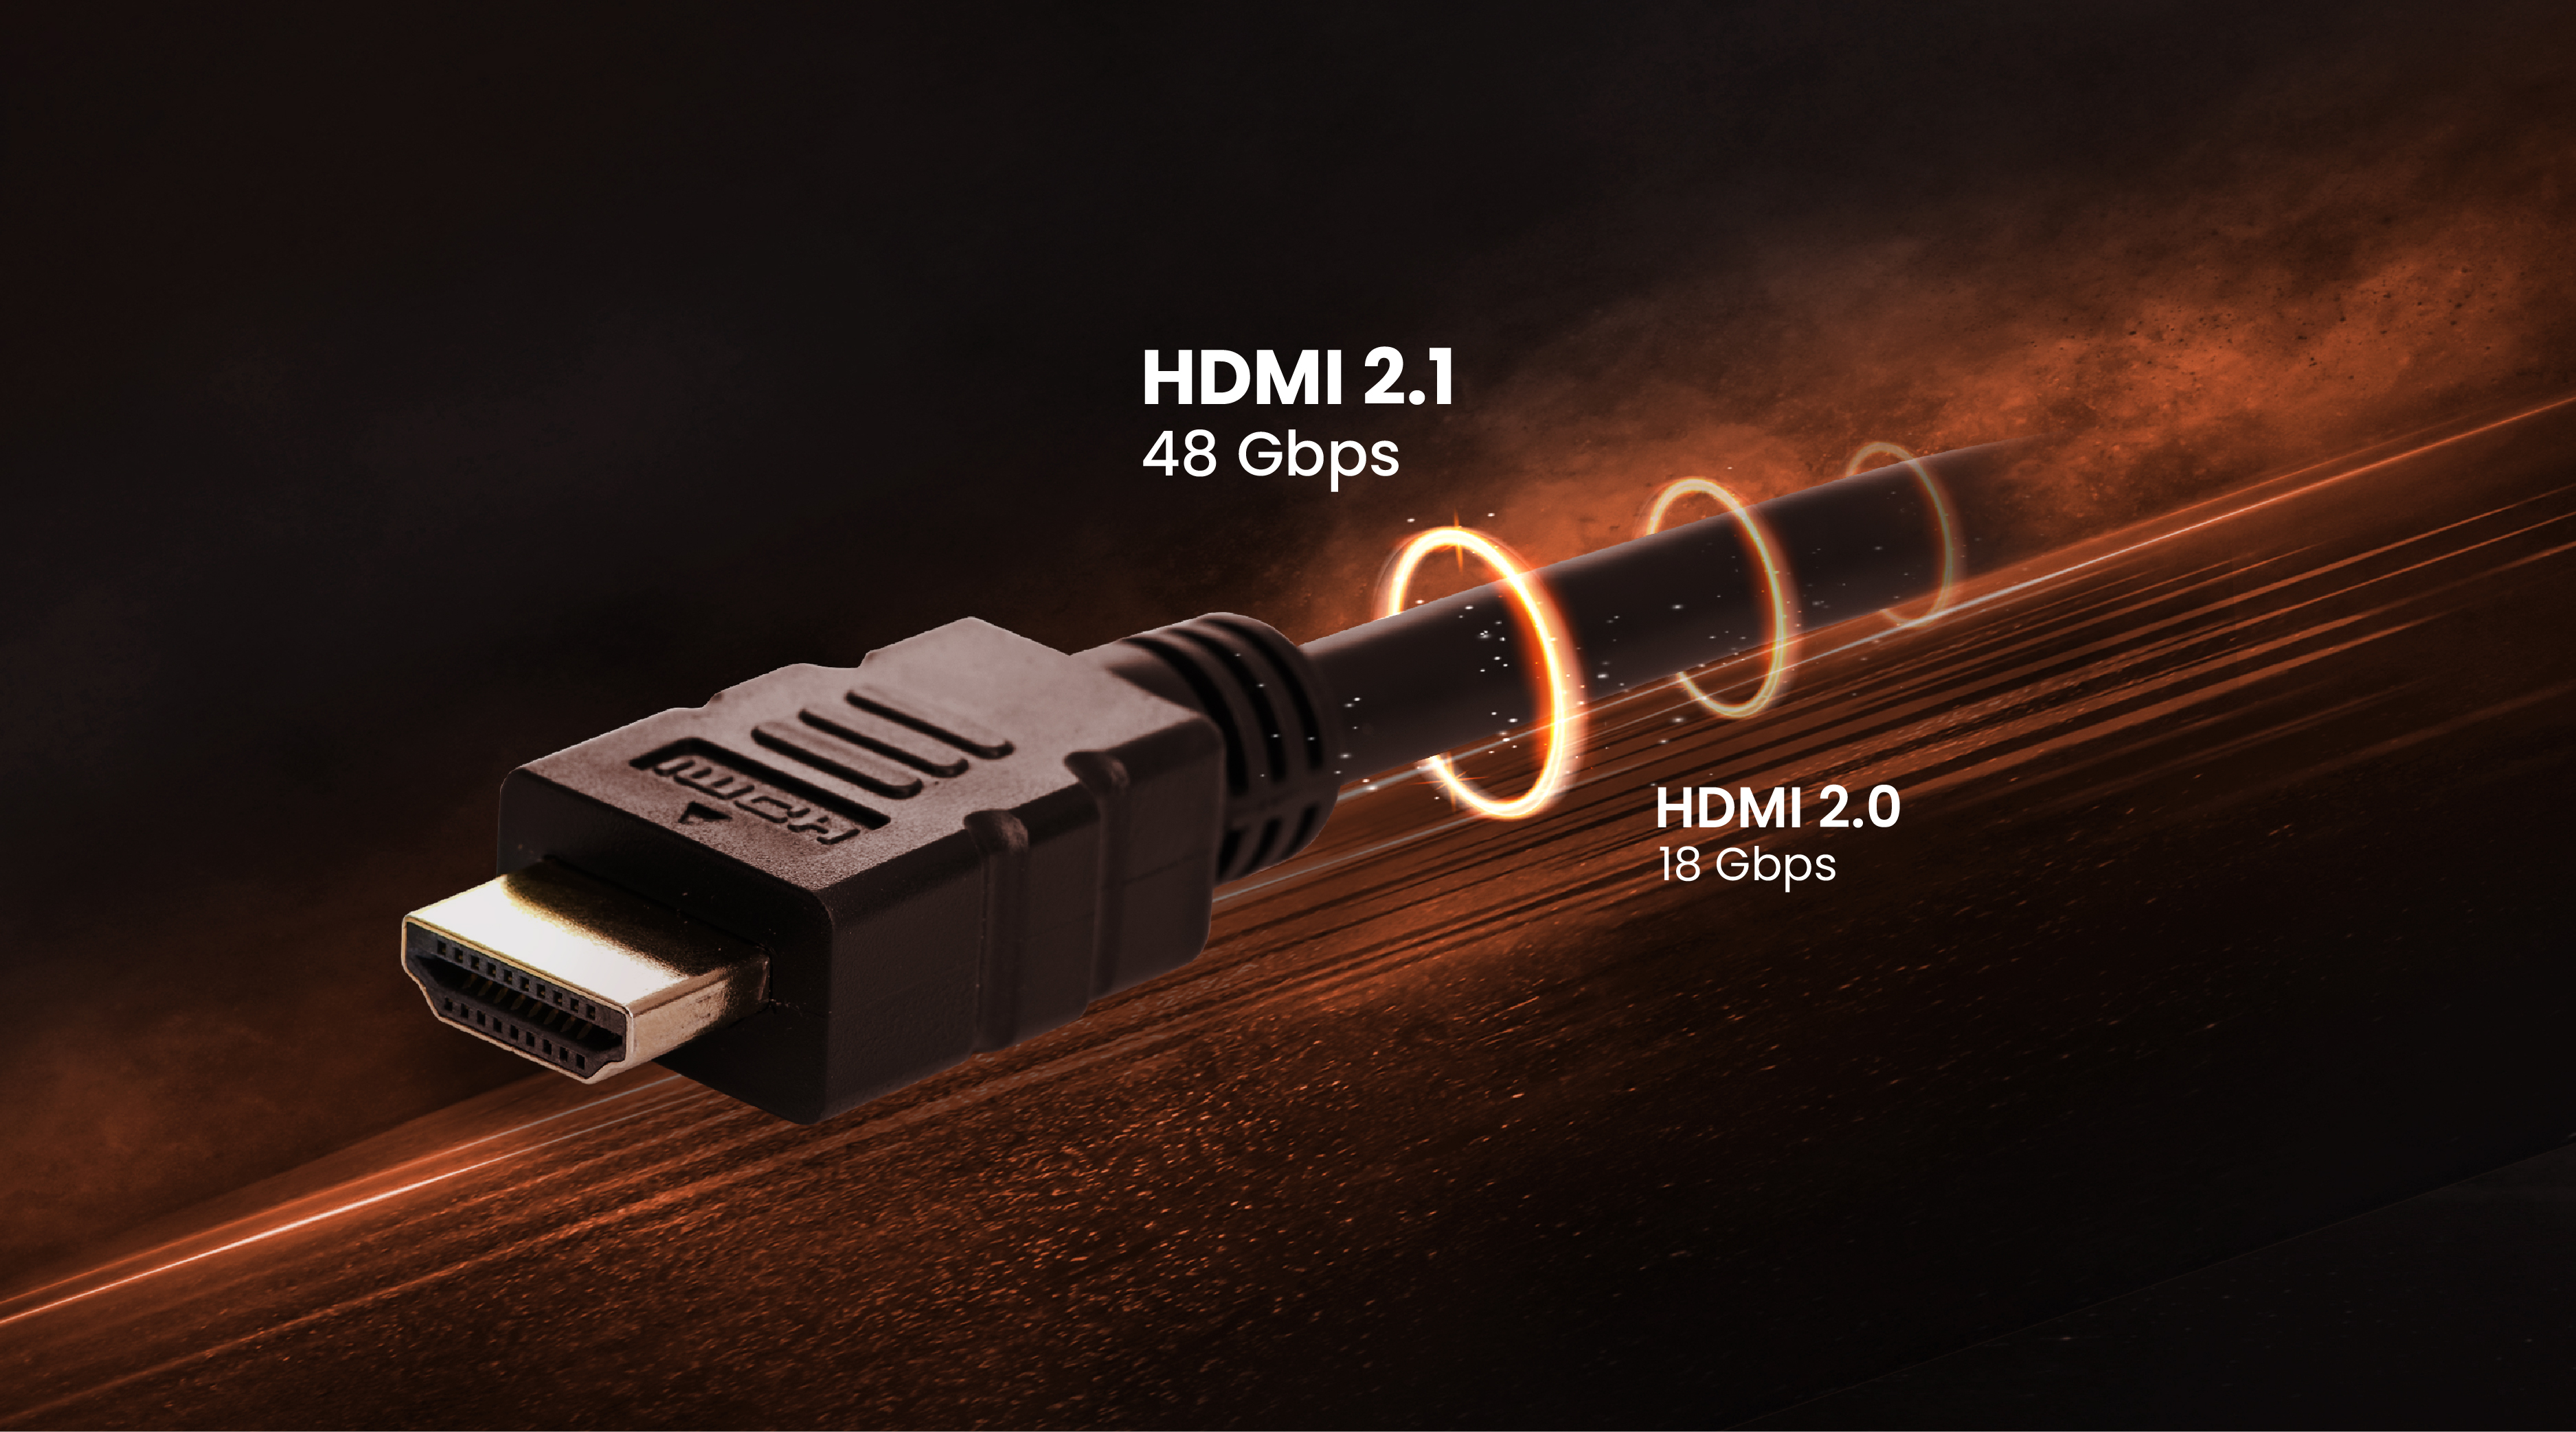 extraño esta ahí Ropa When Do I Really Need HDMI 2.1 or Is HDMI 2.0 Enough? | BenQ US